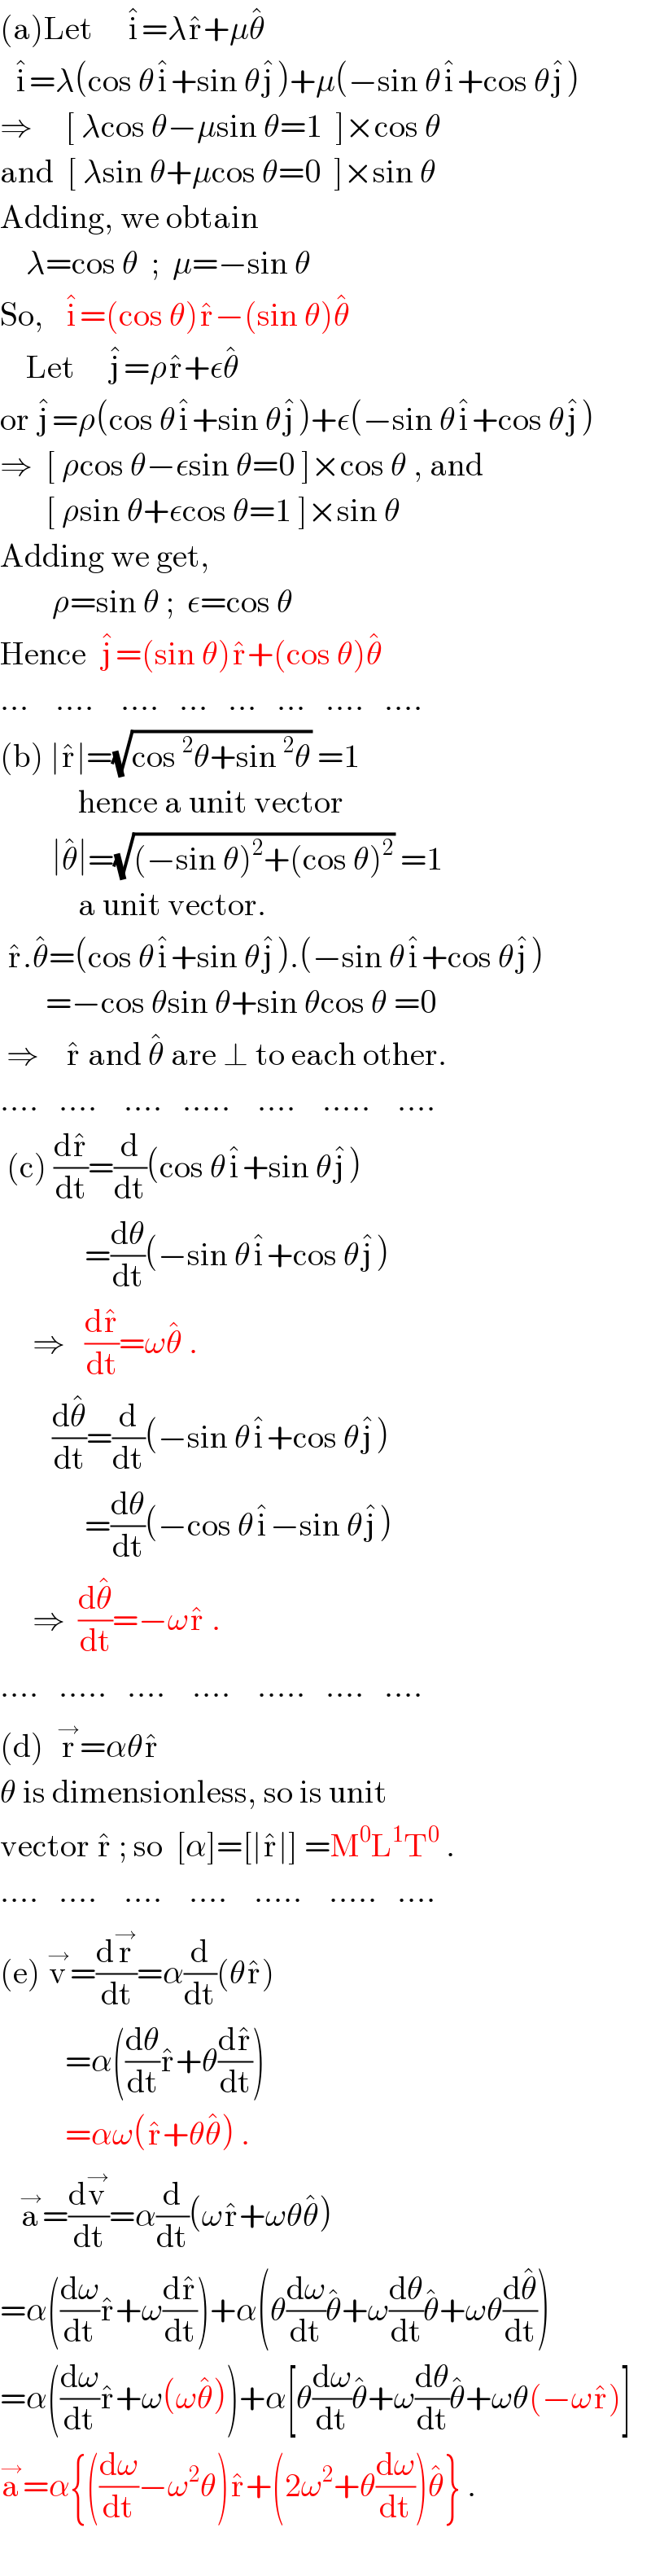 (a)Let     i^� =λr^� +μθ^�     i^� =λ(cos θi^� +sin θj^� )+μ(−sin θi^� +cos θj^� )  ⇒     [ λcos θ−μsin θ=1  ]×cos θ  and  [ λsin θ+μcos θ=0  ]×sin θ  Adding, we obtain      λ=cos θ  ;  μ=−sin θ  So,   i^� =(cos θ)r^� −(sin θ)θ^�       Let     j^� =ρr^� +εθ^�   or j^� =ρ(cos θi^� +sin θj^� )+ε(−sin θi^� +cos θj^� )  ⇒  [ ρcos θ−εsin θ=0 ]×cos θ , and         [ ρsin θ+εcos θ=1 ]×sin θ  Adding we get,          ρ=sin θ ;  ε=cos θ  Hence  j^� =(sin θ)r^� +(cos θ)θ^�   ...    ....    ....   ...   ...   ...   ....   ....  (b) ∣r^� ∣=(√(cos^2 θ+sin^2 θ)) =1              hence a unit vector          ∣θ^� ∣=(√((−sin θ)^2 +(cos θ)^2 )) =1              a unit vector.   r^� .θ^� =(cos θi^� +sin θj^� ).(−sin θi^� +cos θj^� )         =−cos θsin θ+sin θcos θ =0   ⇒    r^�  and θ^�  are ⊥ to each other.  ....   ....    ....   .....    ....    .....    ....   (c) (dr^� /dt)=(d/dt)(cos θi^� +sin θj^� )               =(dθ/dt)(−sin θi^� +cos θj^� )       ⇒   (dr^� /dt)=ωθ^�  .          (dθ^� /dt)=(d/dt)(−sin θi^� +cos θj^� )               =(dθ/dt)(−cos θi^� −sin θj^� )       ⇒  (dθ^� /dt)=−ωr^�  .      ....   .....   ....    ....    .....   ....   ....  (d)  r^→ =αθr^�   θ is dimensionless, so is unit   vector r^�  ; so  [α]=[∣r^� ∣] =M^0 L^1 T^0  .  ....   ....    ....    ....    .....    .....   ....  (e) v^→ =(dr^→ /dt)=α(d/dt)(θr^� )            =α((dθ/dt)r^� +θ(dr^� /dt))            =αω(r^� +θθ^� ) .     a^→ =(dv^→ /dt)=α(d/dt)(ωr^� +ωθθ^� )  =α((dω/dt)r^� +ω(dr^� /dt))+α(θ(dω/dt)θ^� +ω(dθ/dt)θ^� +ωθ(dθ^� /dt))  =α((dω/dt)r^� +ω(ωθ^� ))+α[θ(dω/dt)θ^� +ω(dθ/dt)θ^� +ωθ(−ωr^� )]  a^→ =α{((dω/dt)−ω^2 θ)r^� +(2ω^2 +θ(dω/dt))θ^� } .    